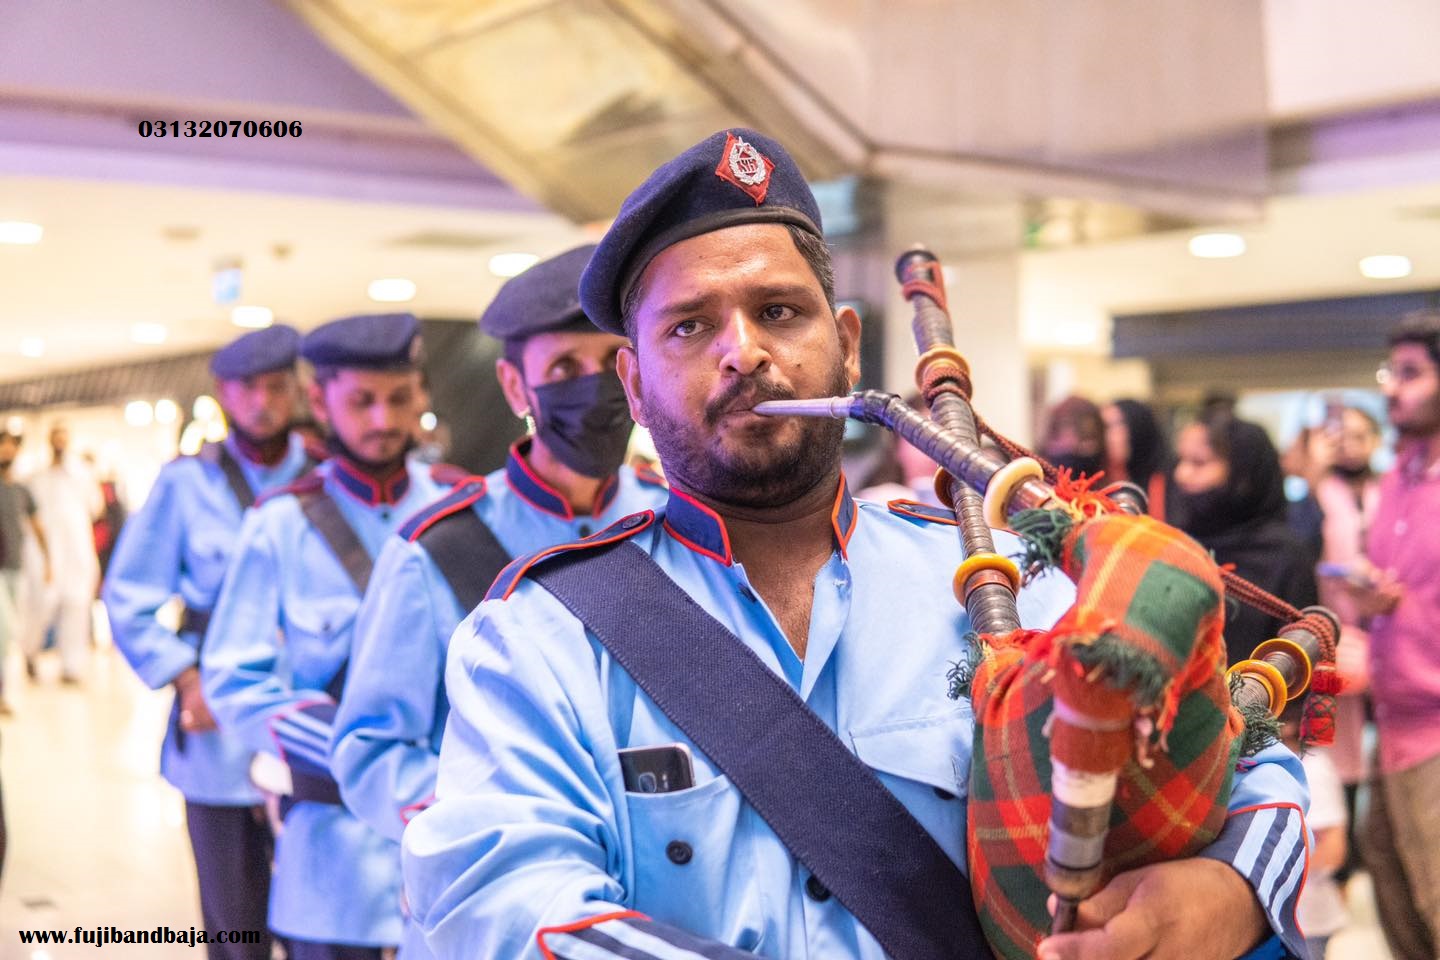 Fuji band. pipe band. band Baja. band service in Karachi. Navy band